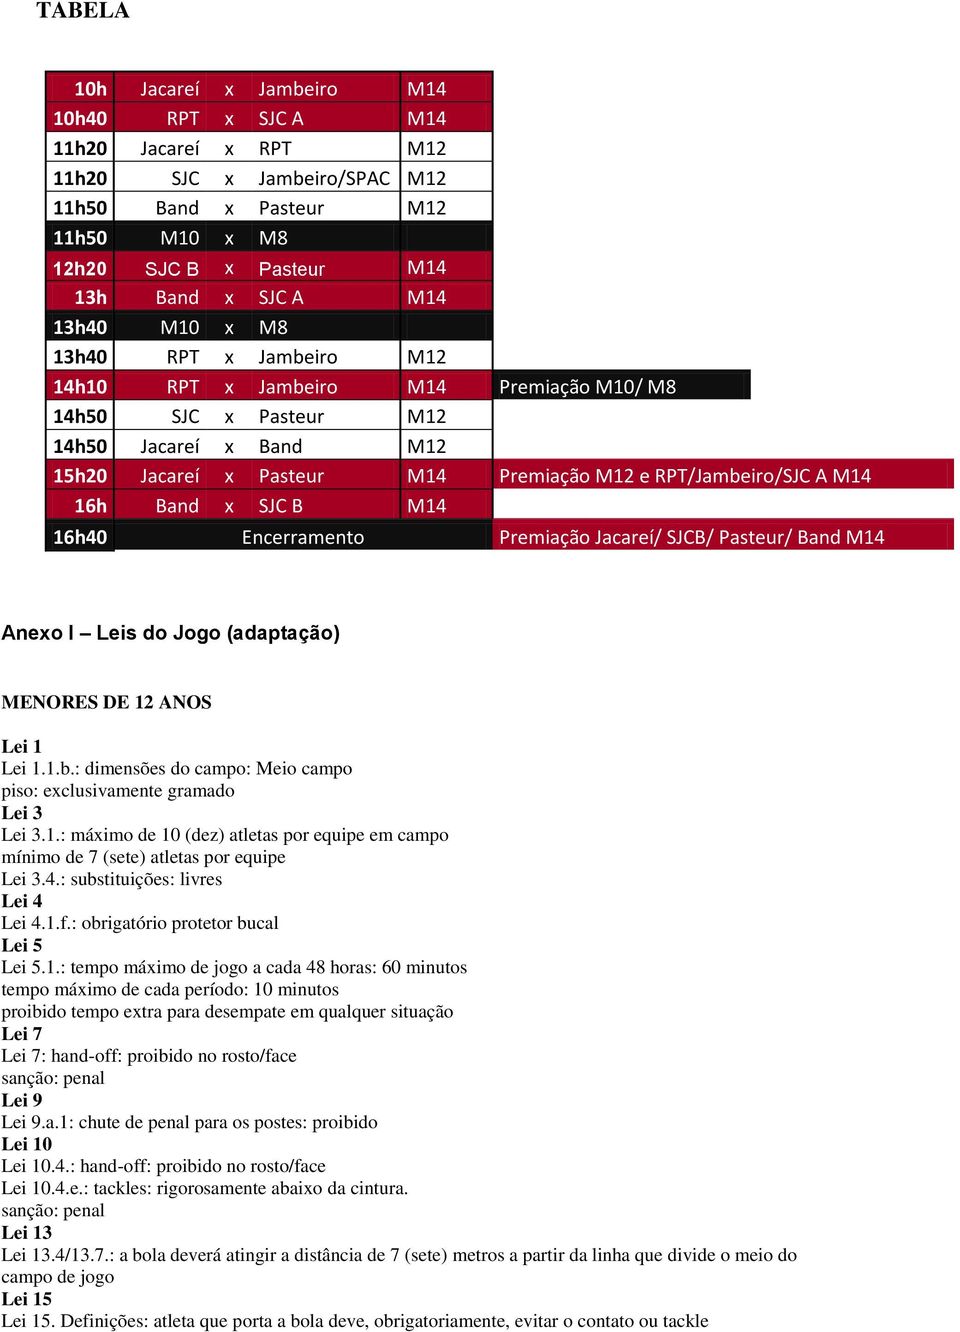 16h Band x SJC B M14 16h40 Encerramento Premiação Jacareí/ SJCB/ Pasteur/ Band M14 Anexo I Leis do Jogo (adaptação) MENORES DE 12 ANOS Lei 1 Lei 1.1.b.